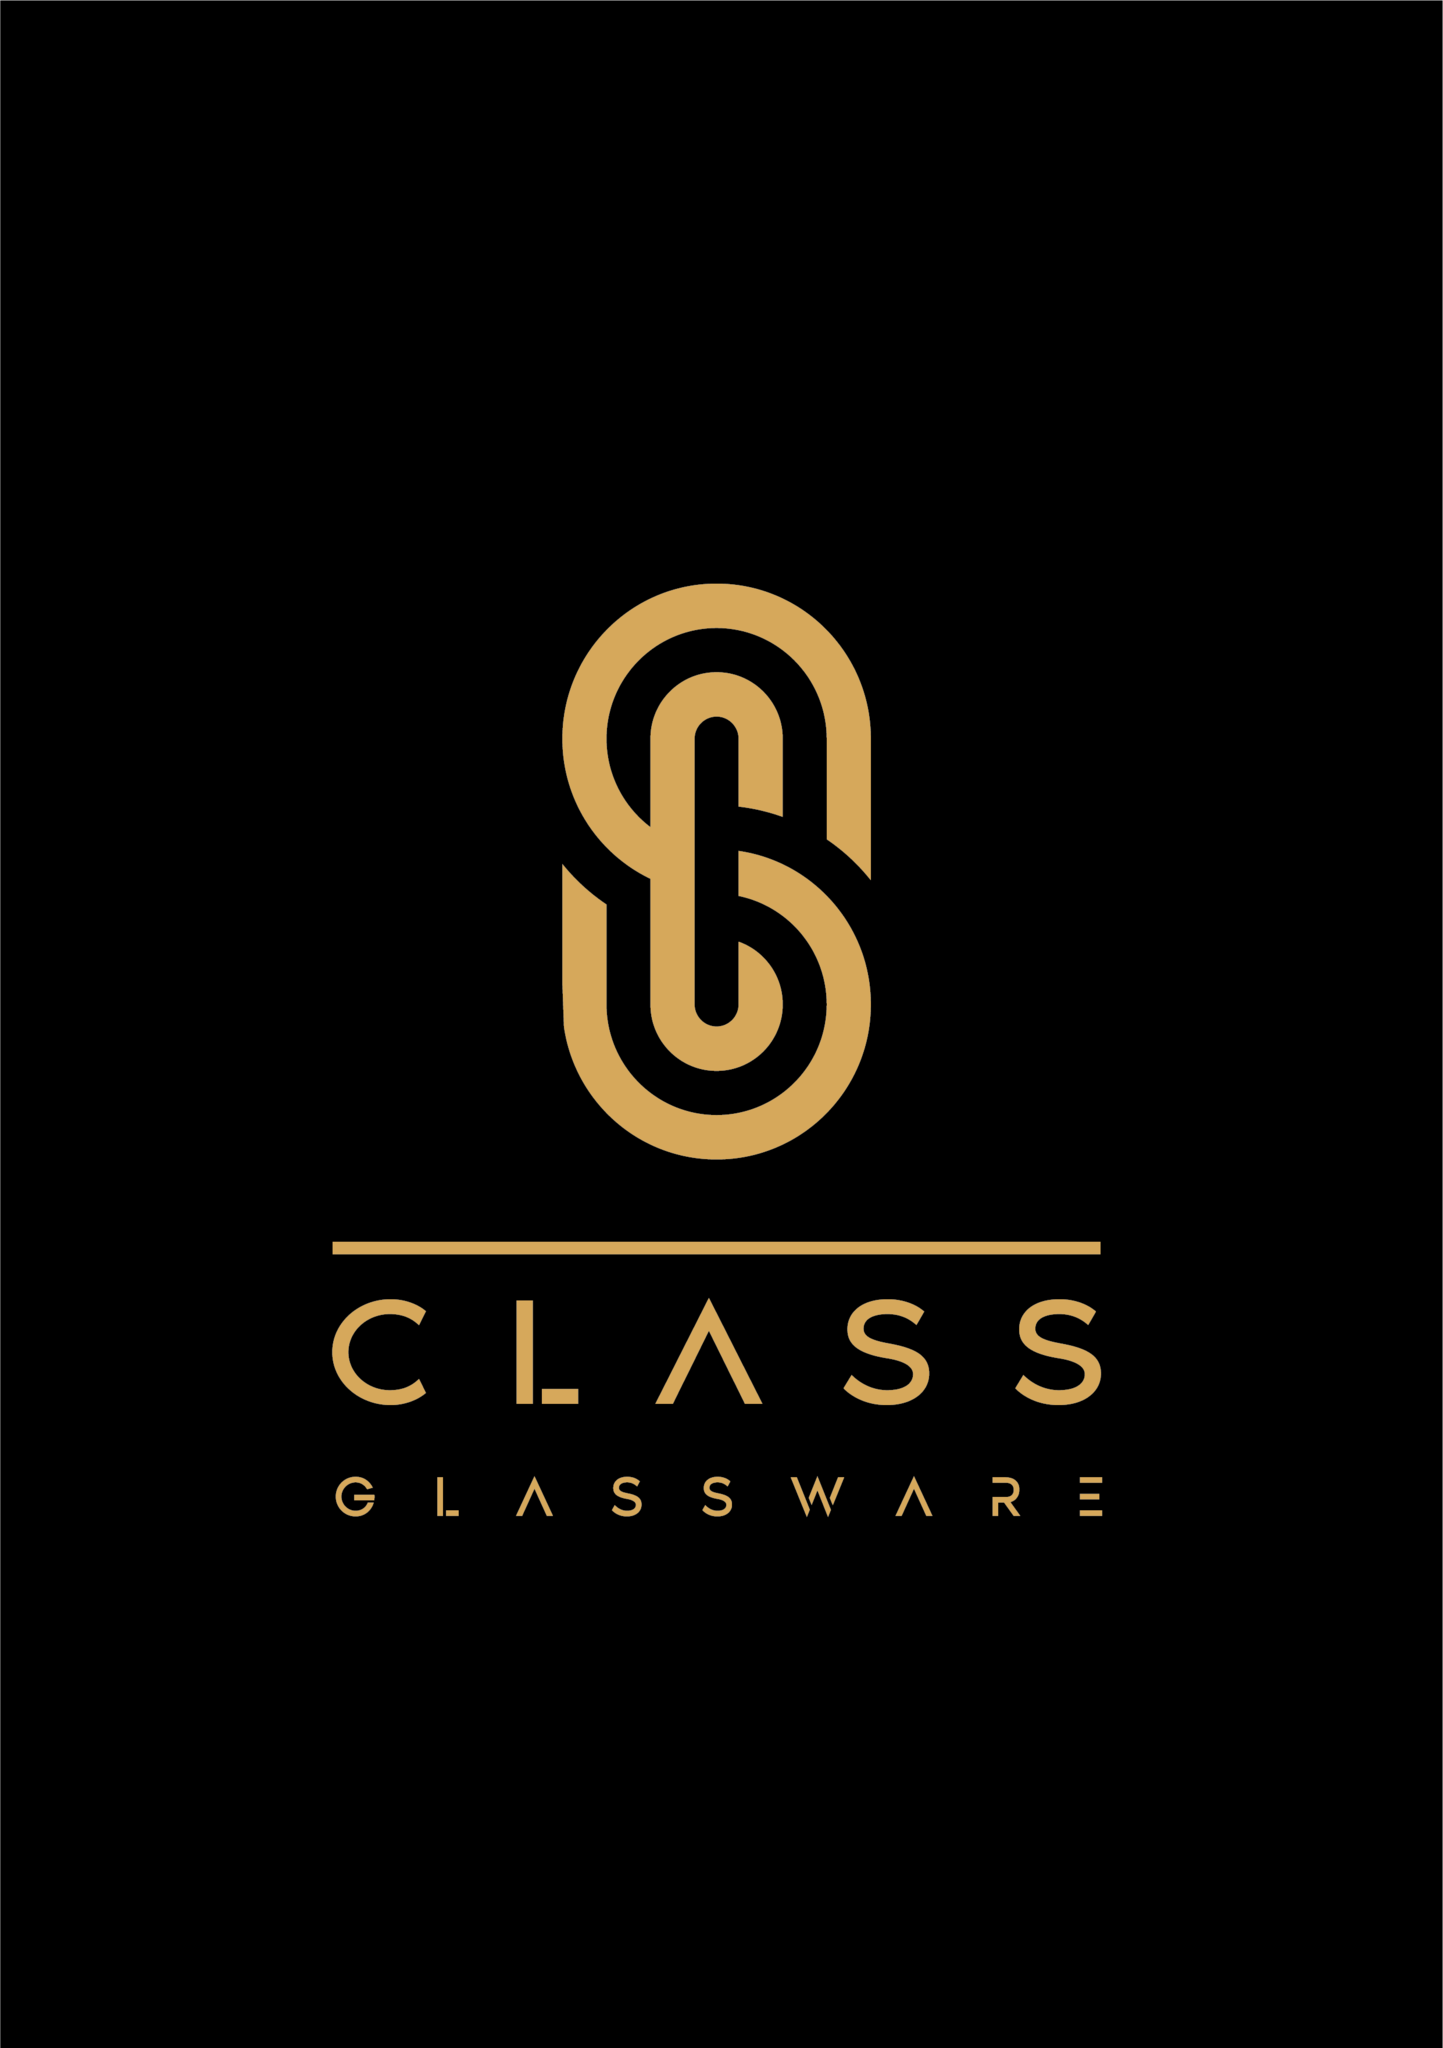 CLASS GLASSWARE